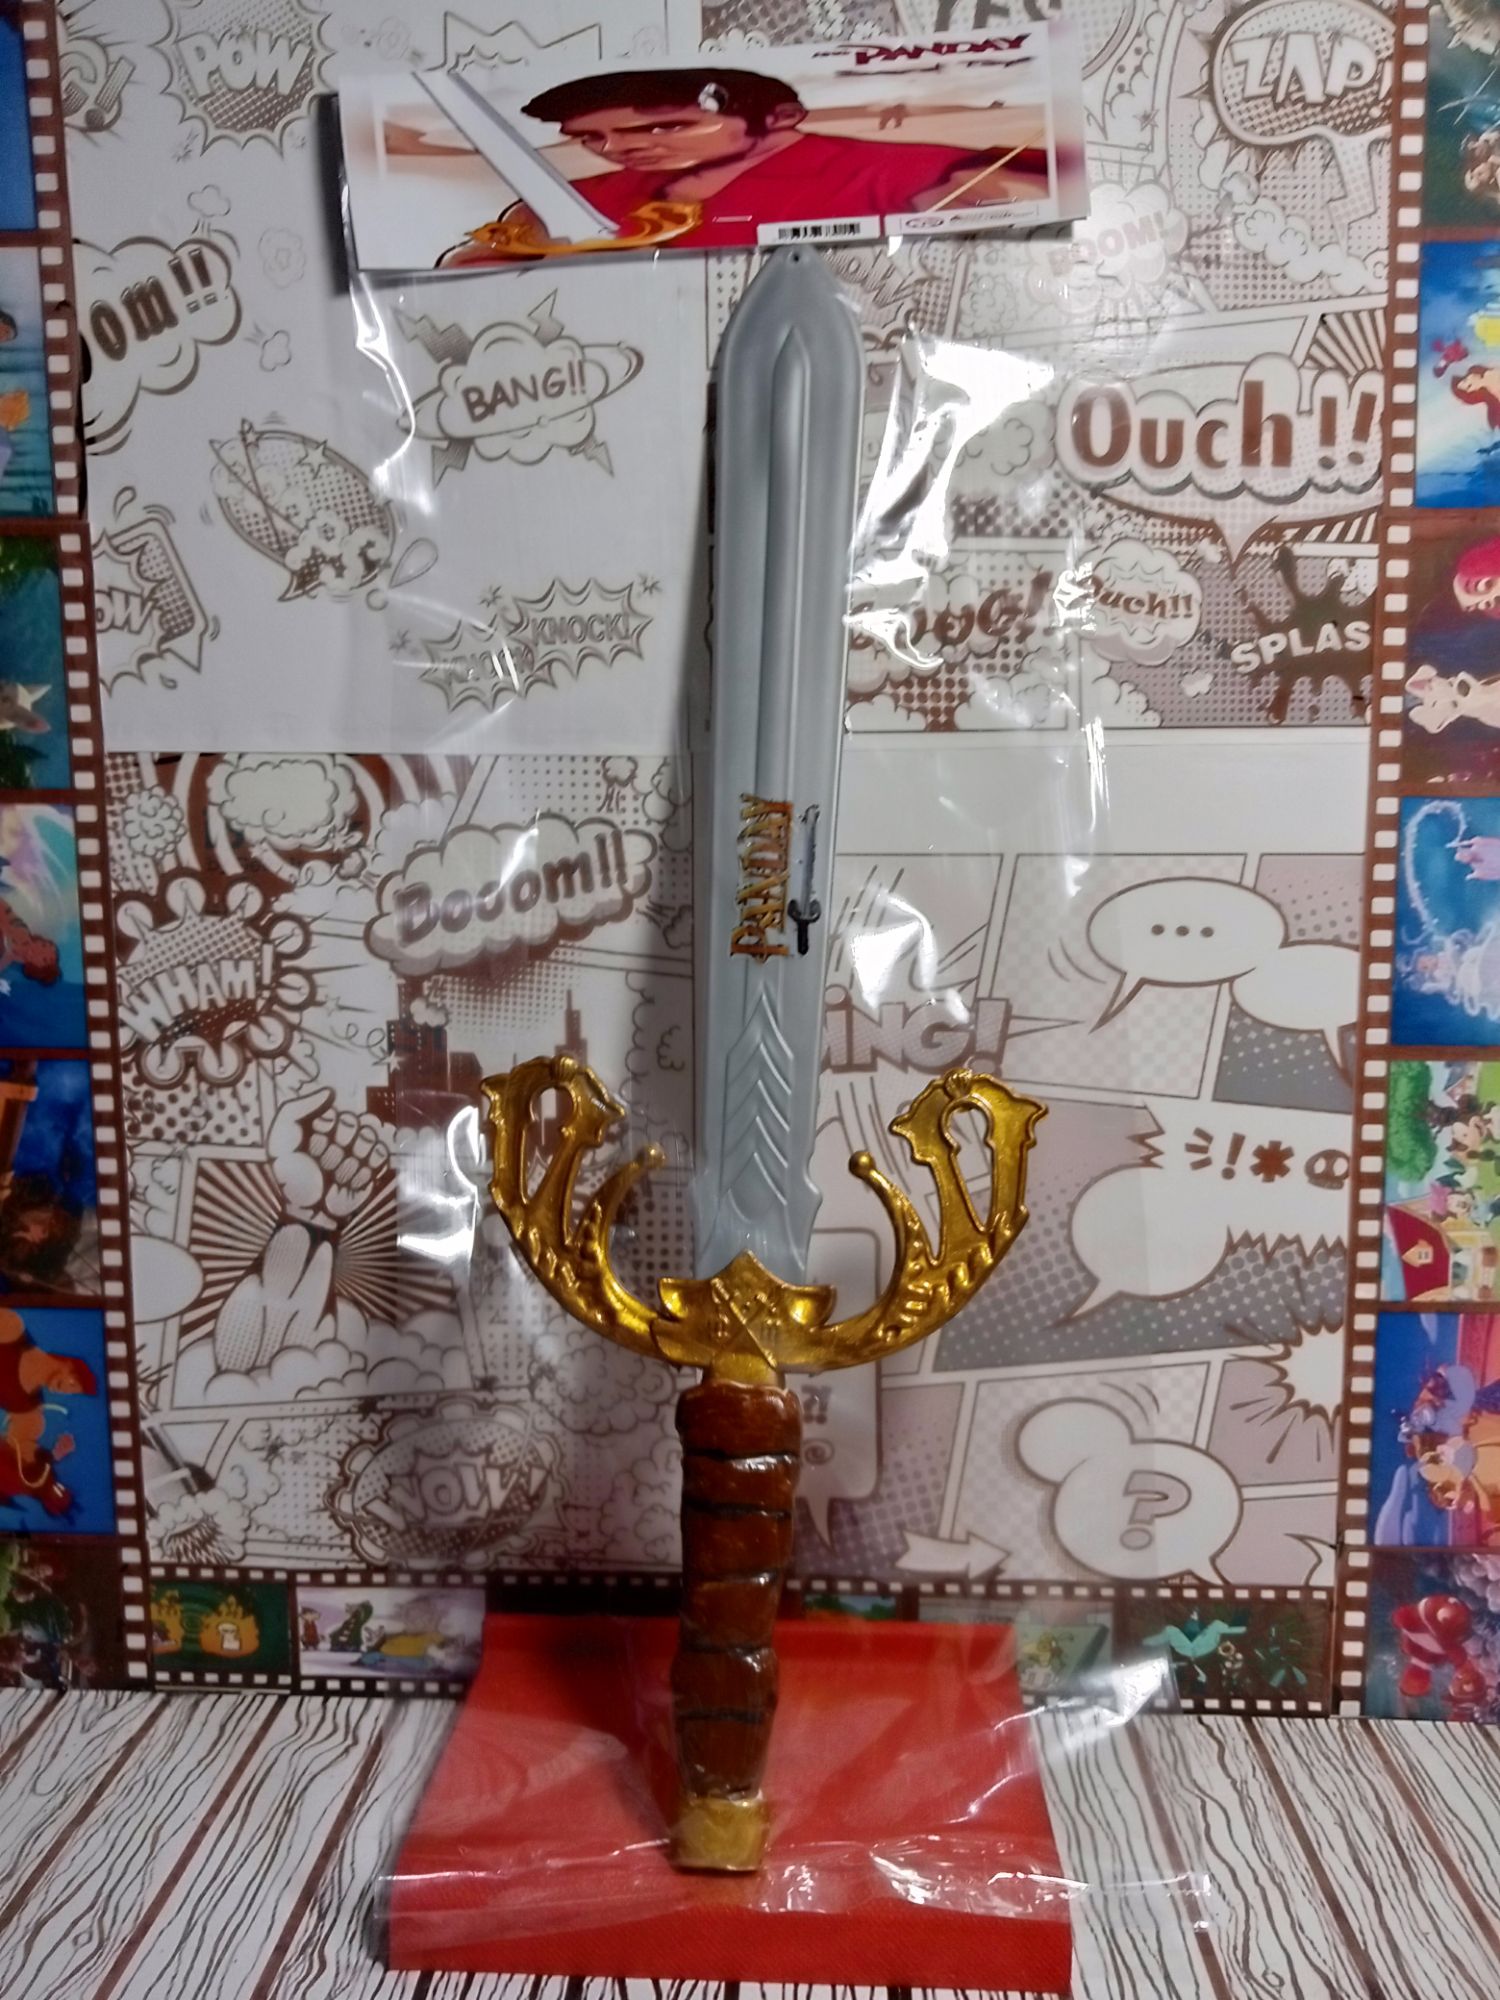 panday sword